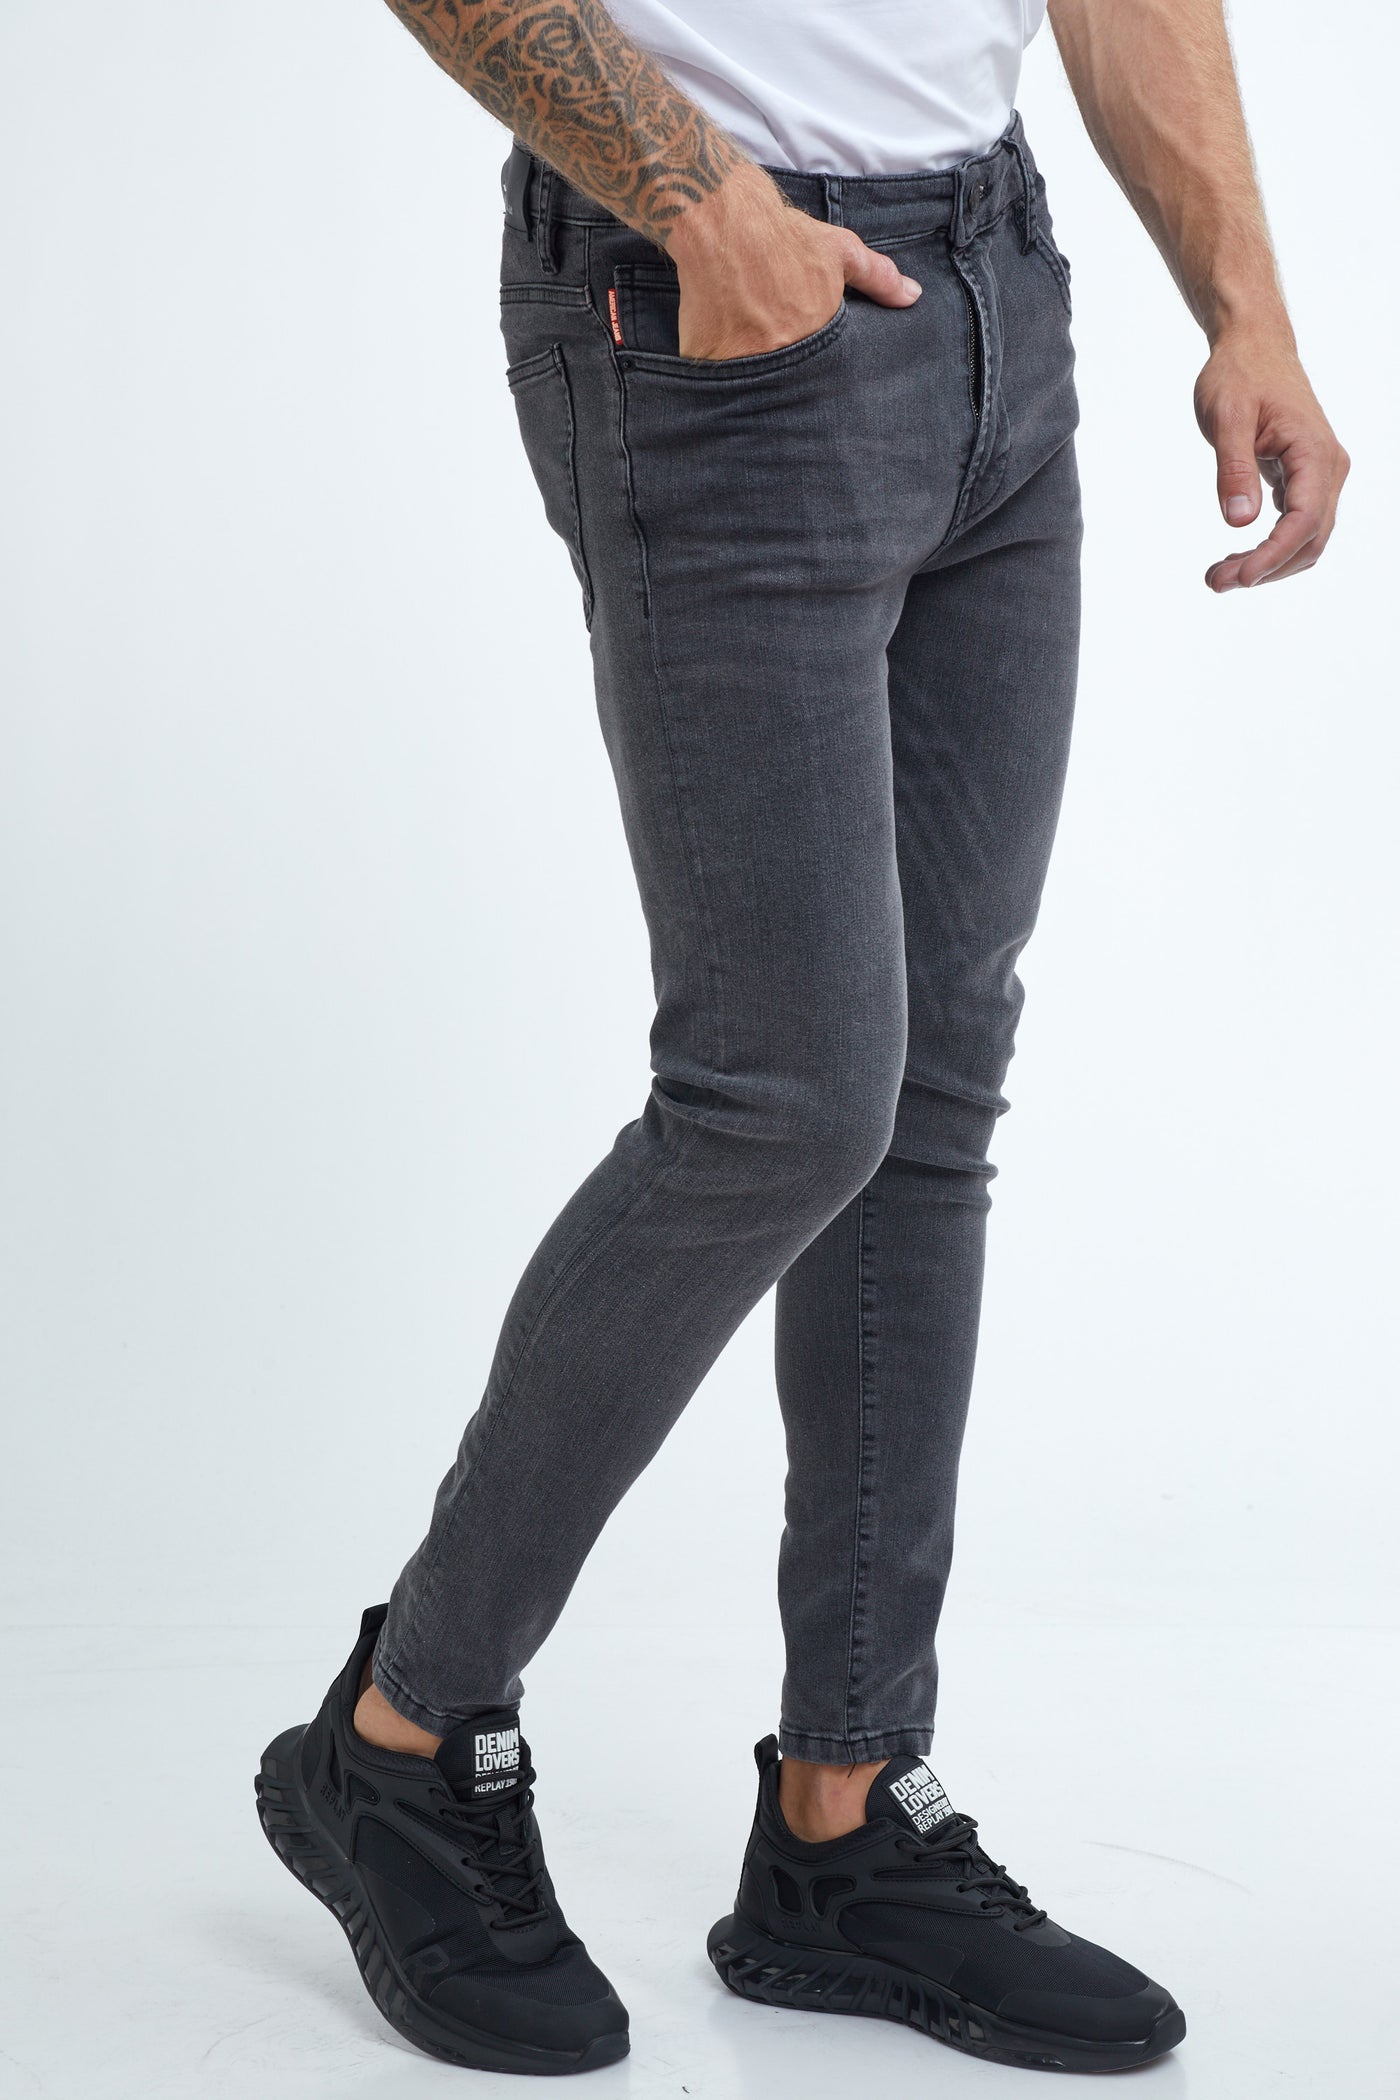 146 מכנס ג'ינס סקיני שחור